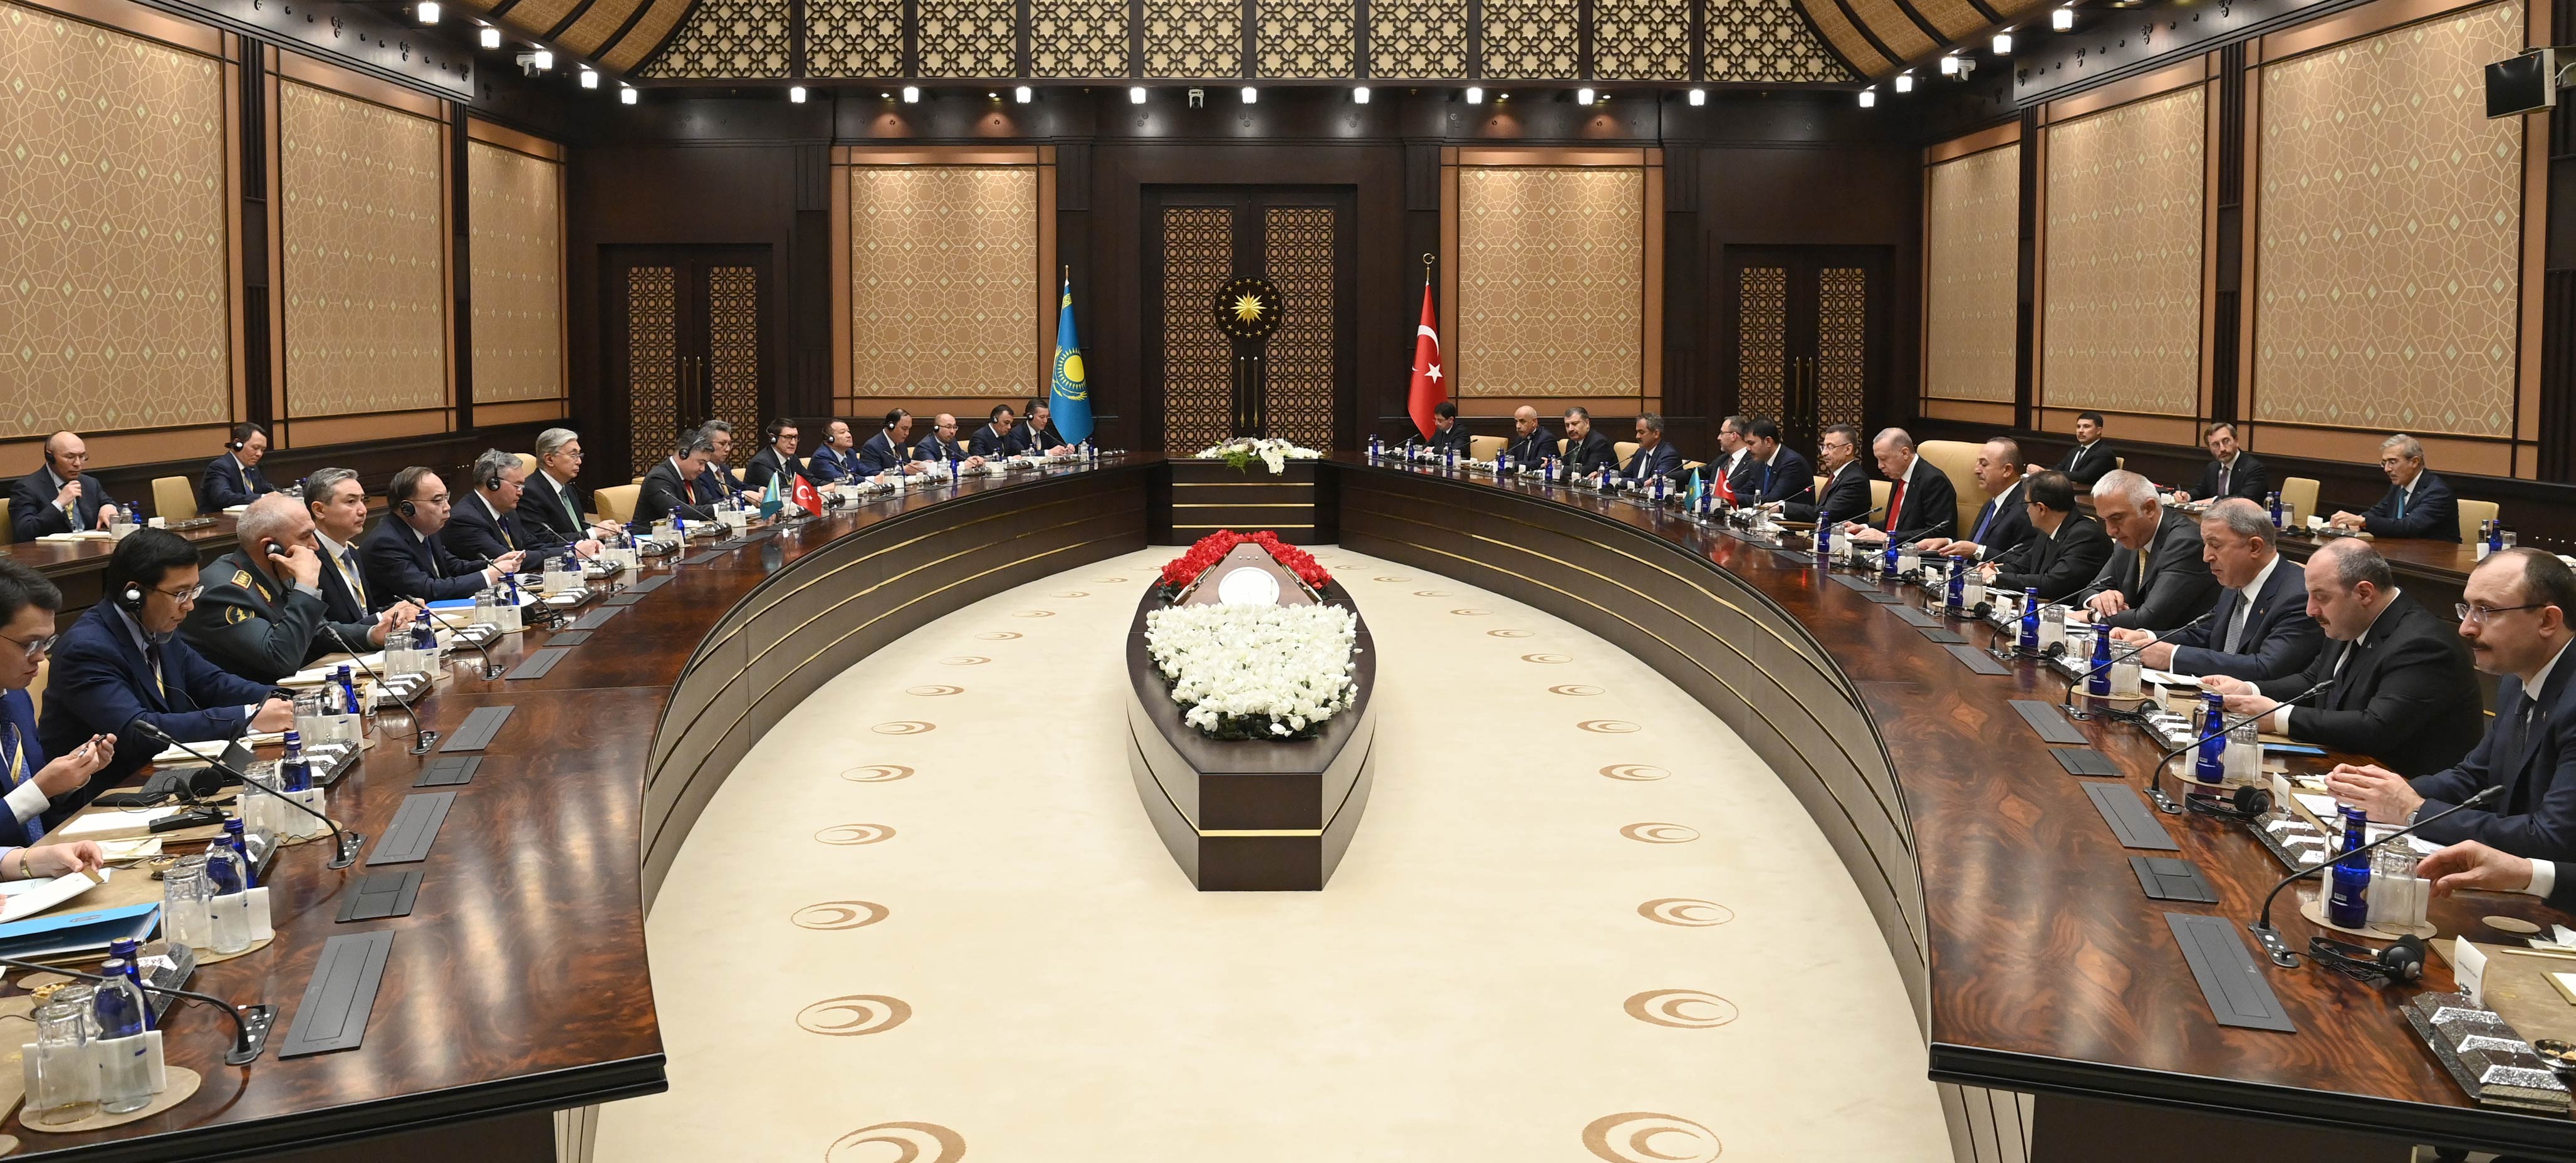 Касым-Жомарт Токаев и Реджеп Тайип Эрдоган договорились вывести взаимоотношения между Казахстаном и Турцией на уровень расширенного стратегического партнерства